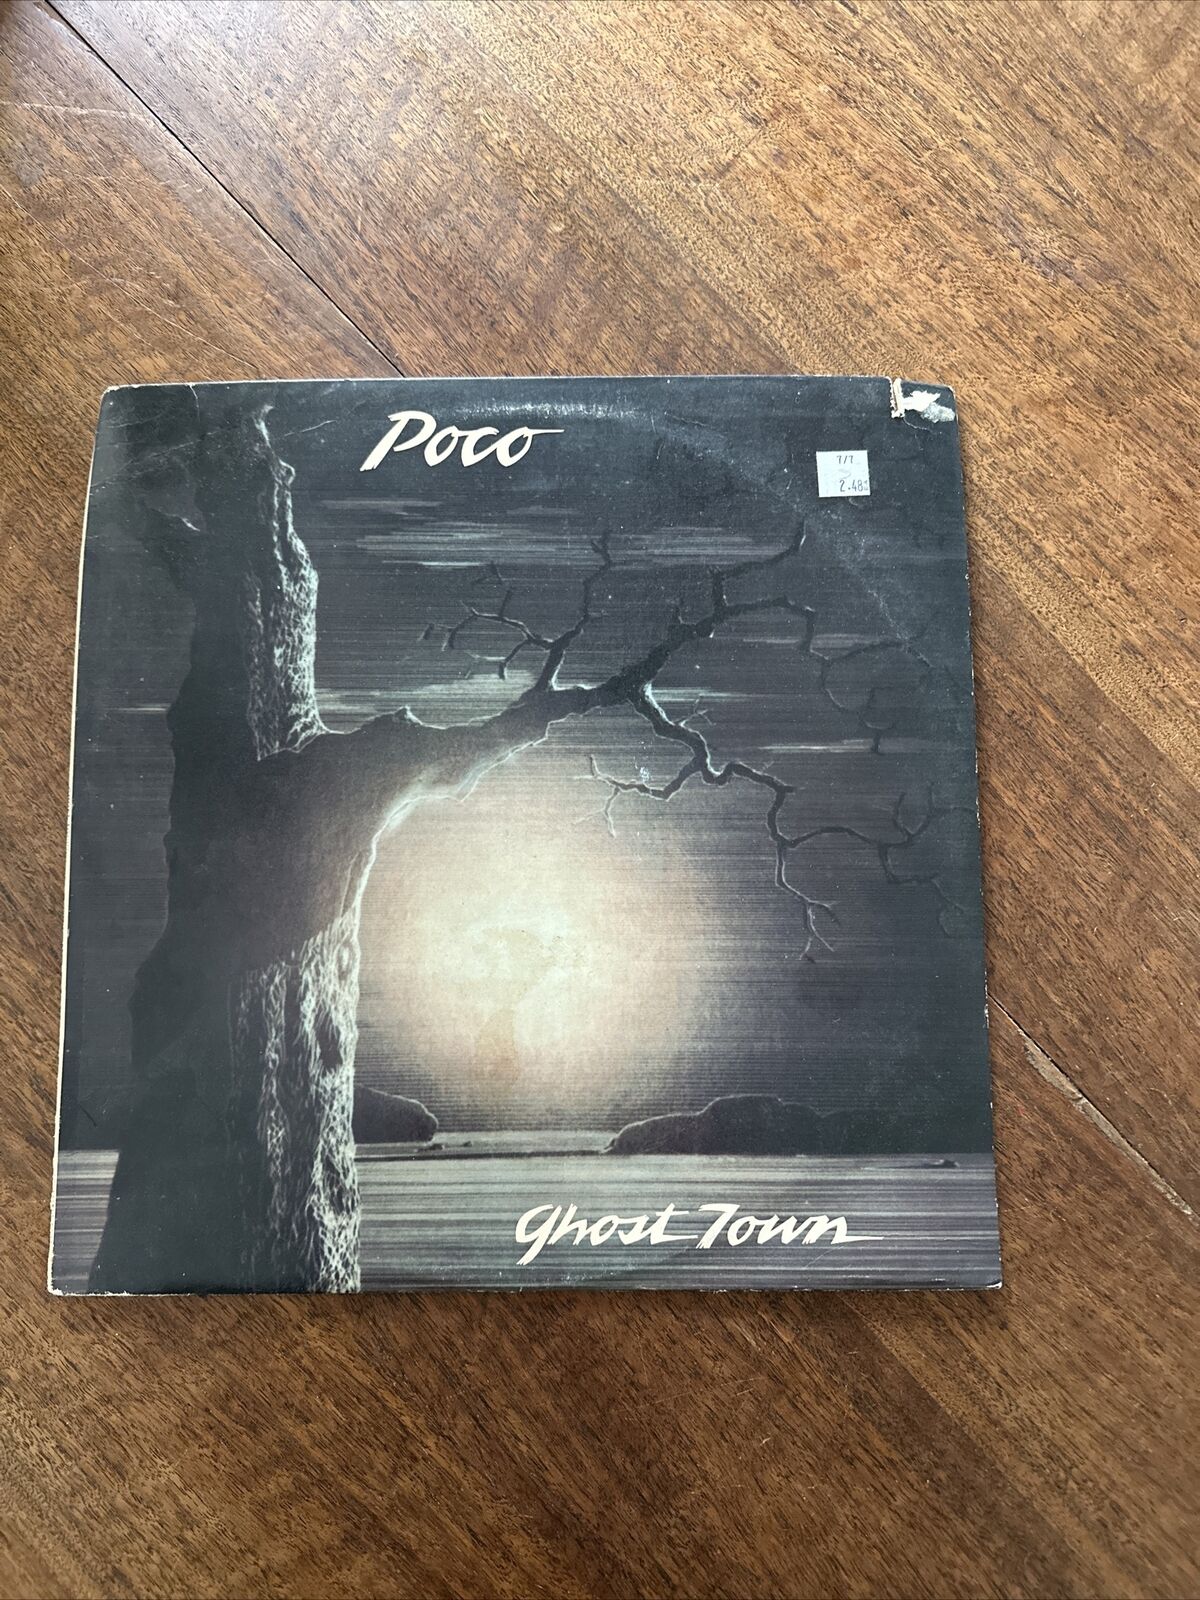 NM 1982 Poco Ghost Town LP Album Atlantic Records 80008-1